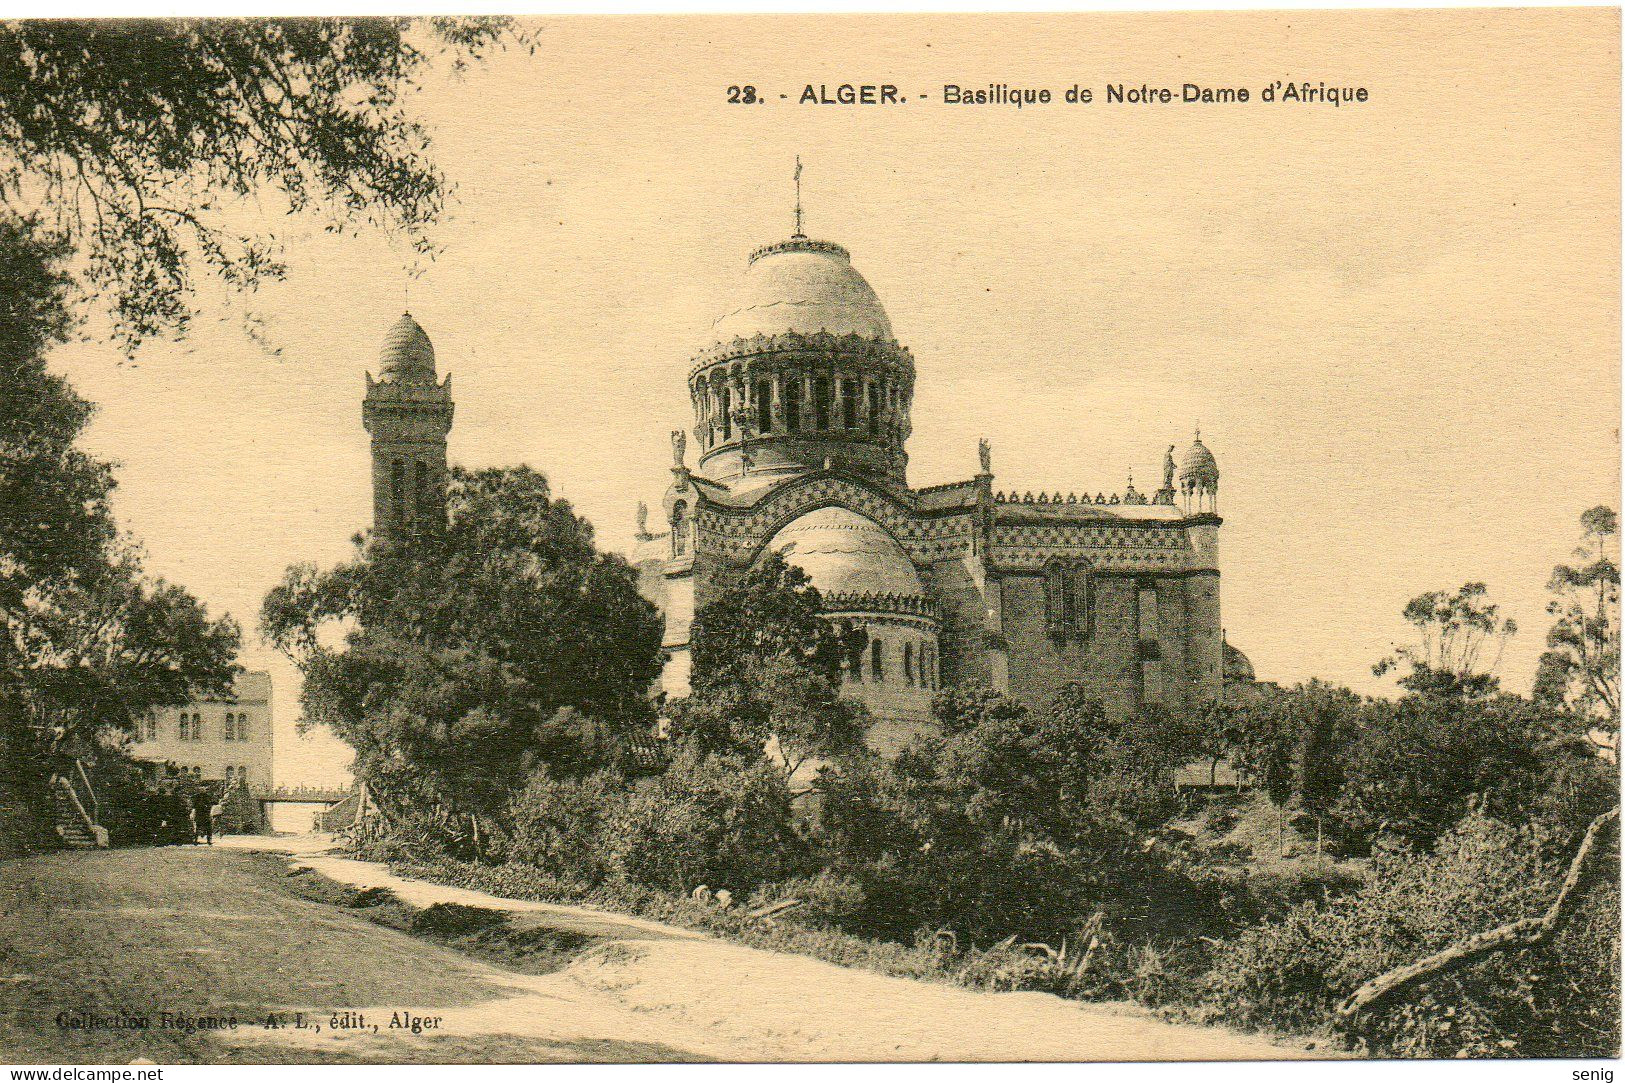 ALGERIE - ALGER - 23 - Basilique Notre Dame D'Afrique - Collection Régence A. L. édit. Alger (Leroux - Algerien